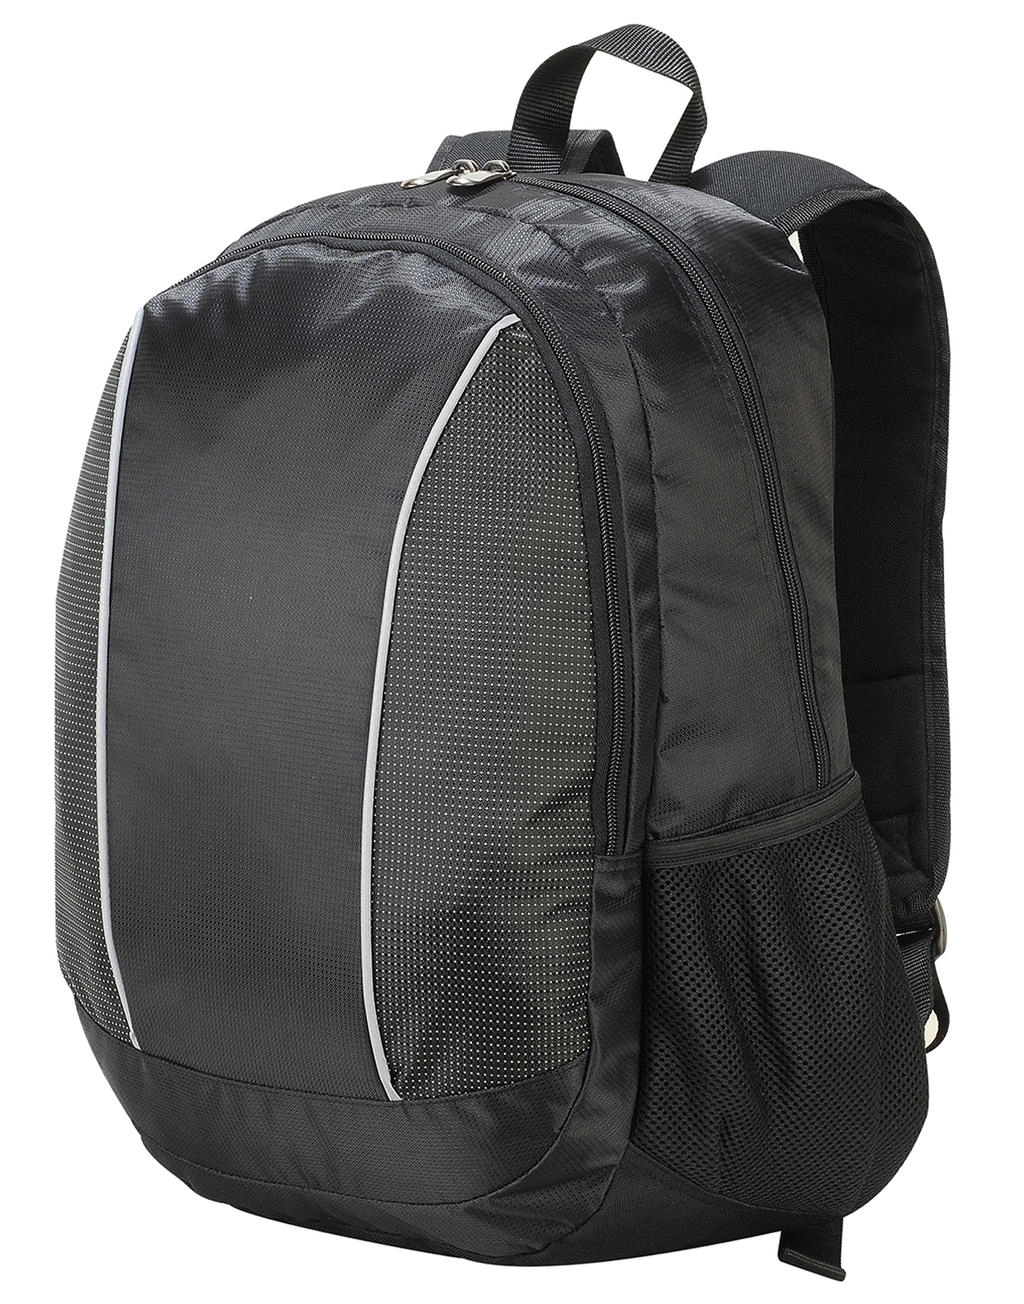 Zurich Classic Laptop Backpack zum Besticken und Bedrucken mit Ihren Logo, Schriftzug oder Motiv.